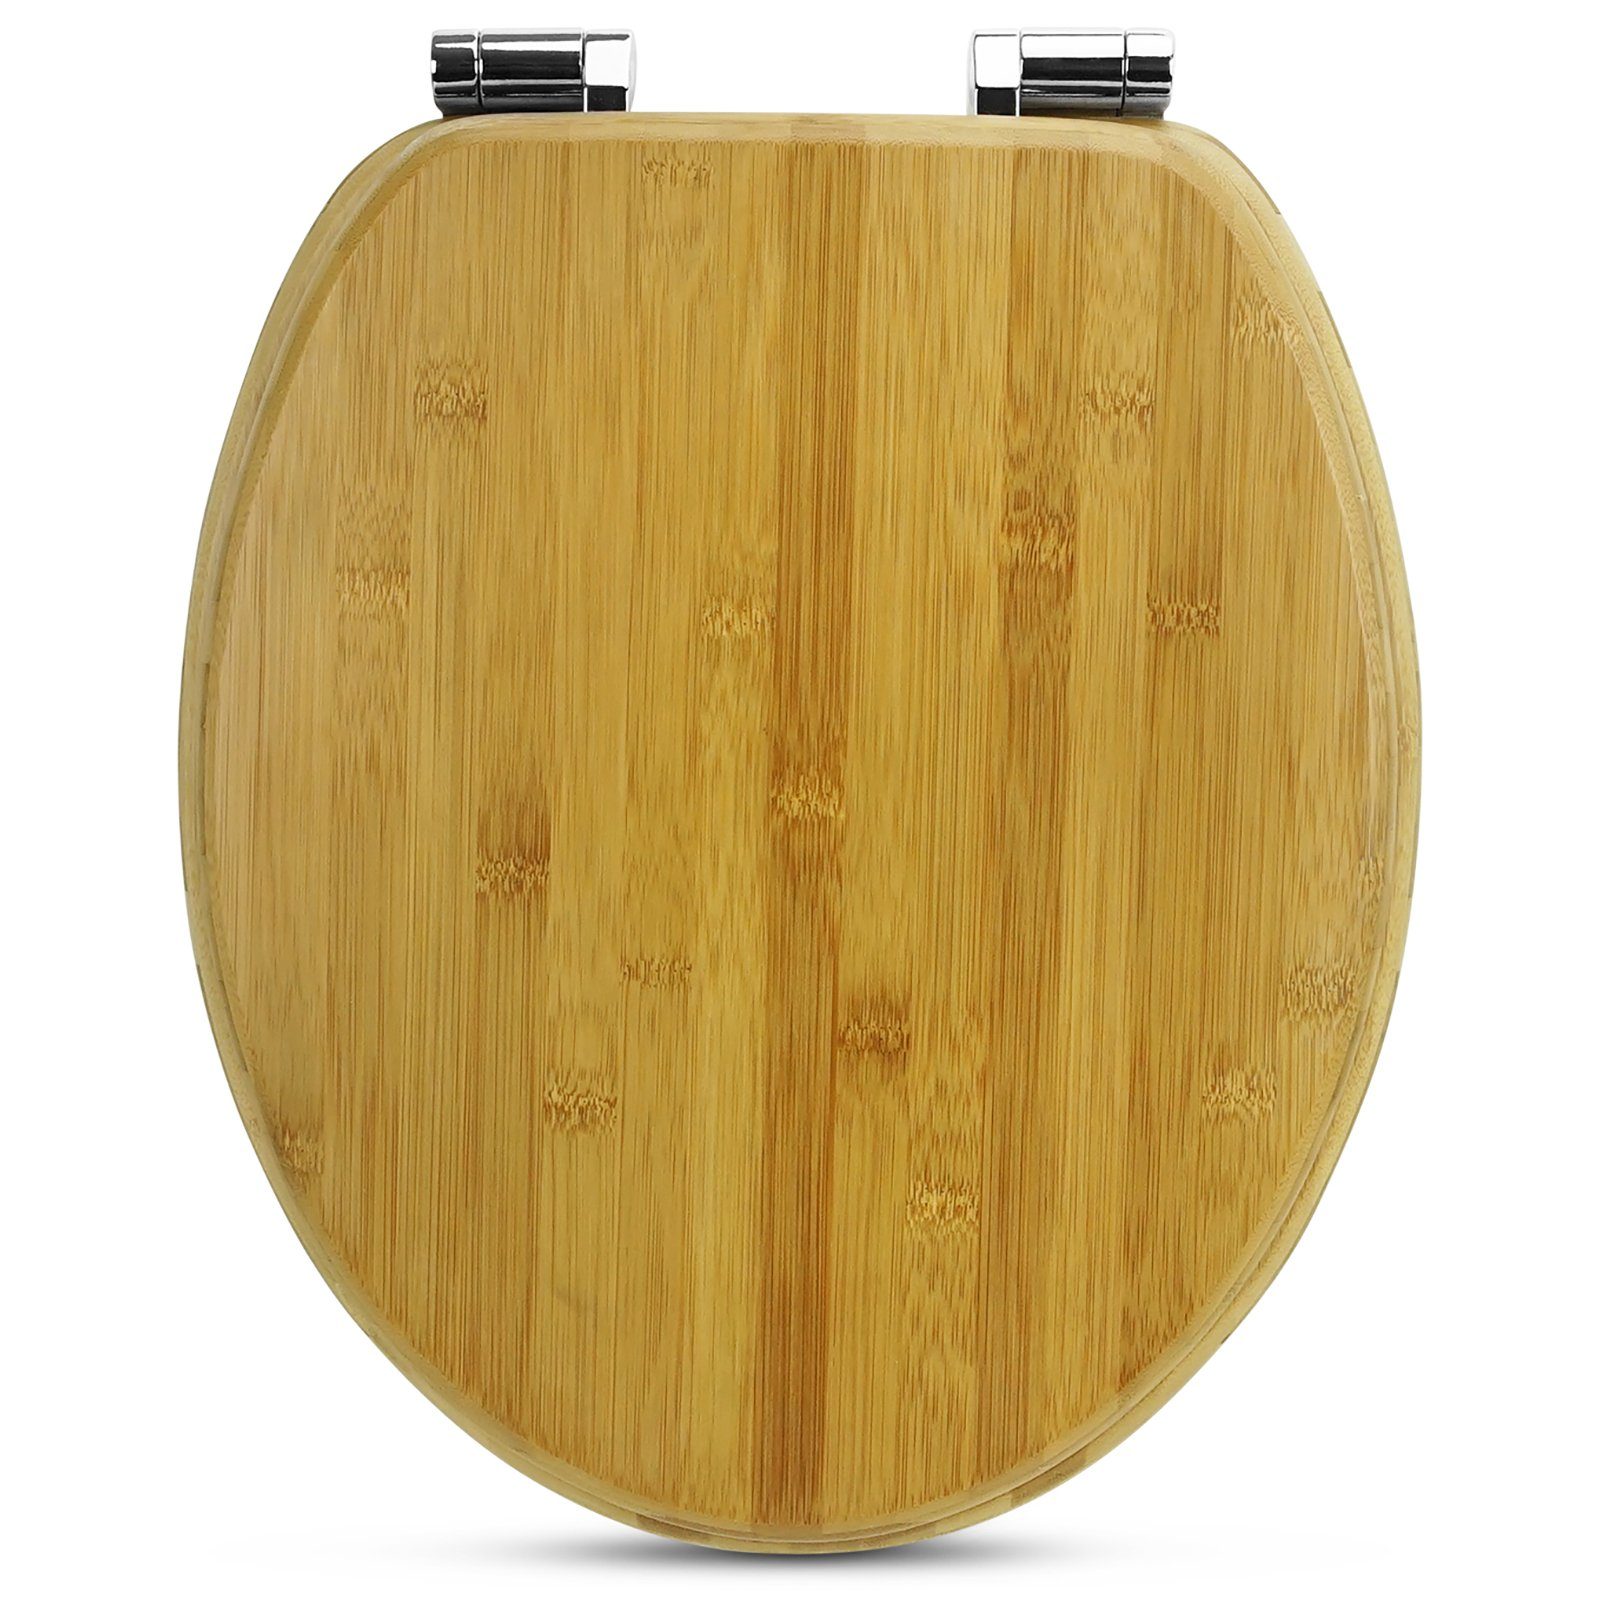 Sanfino WC-Sitz "Dark Brown" Premium Toilettendeckel mit Absenkautomatik  aus Bambus, in edler Holz-Optik, hohem Sitzkomfort, einfache Montage